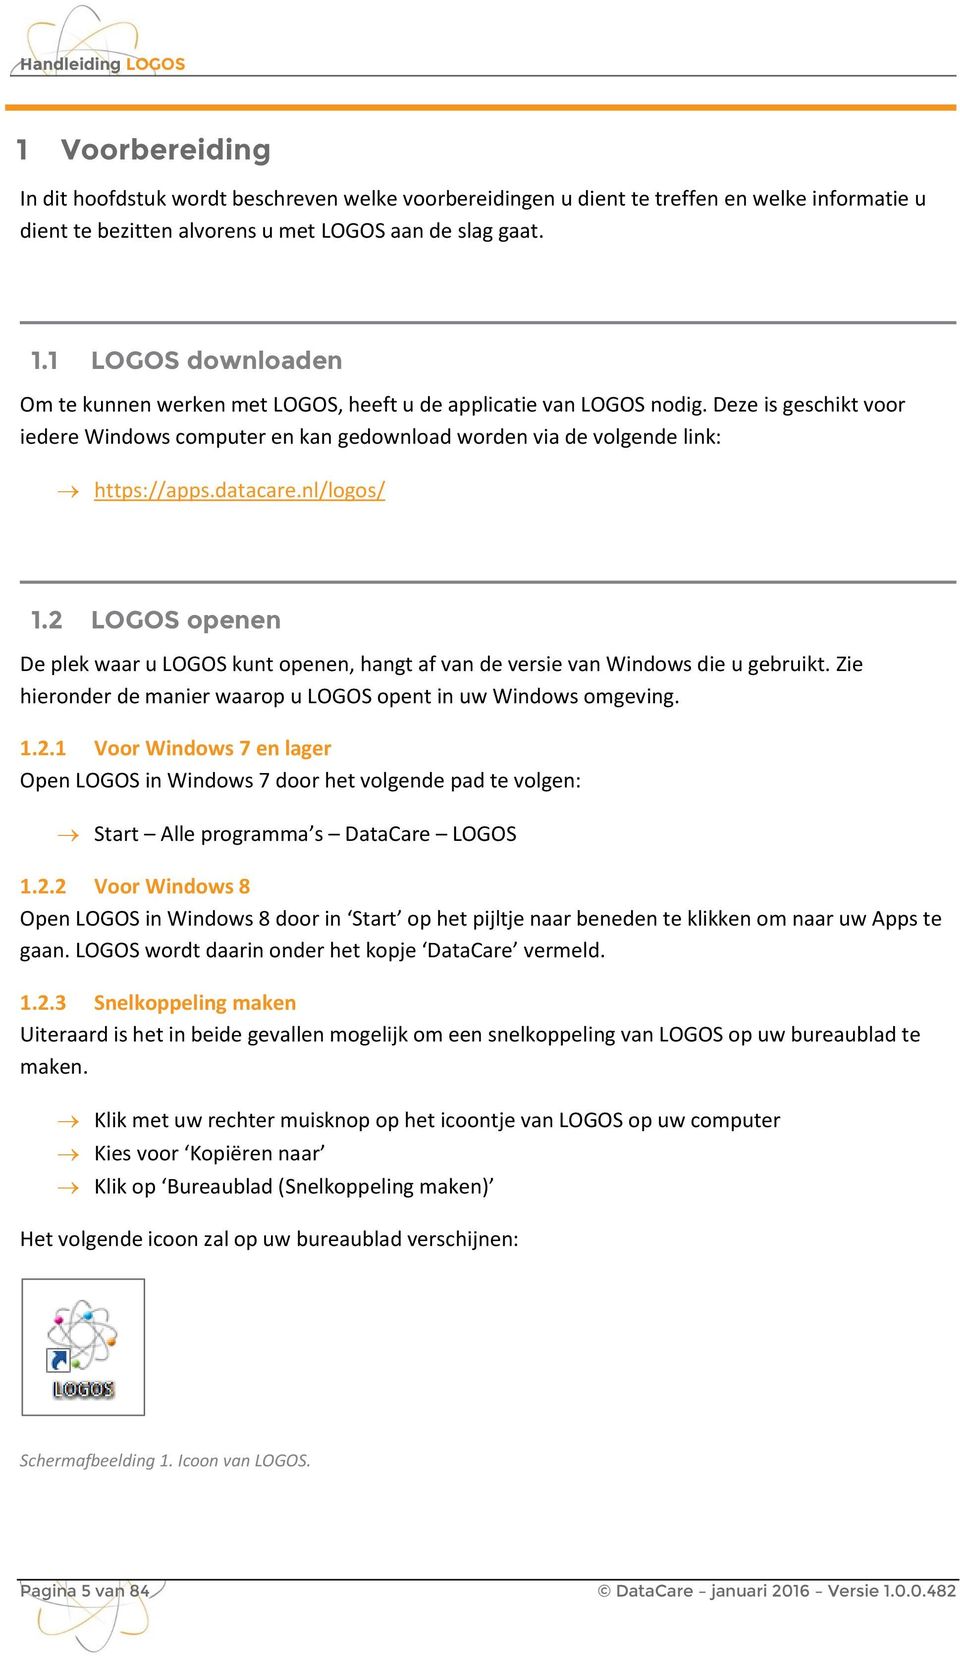 datacare.nl/logos/ 1.2 LOGOS openen De plek waar u LOGOS kunt openen, hangt af van de versie van Windows die u gebruikt. Zie hieronder de manier waarop u LOGOS opent in uw Windows omgeving. 1.2.1 Voor Windows 7 en lager Open LOGOS in Windows 7 door het volgende pad te volgen: Start Alle programma s DataCare LOGOS 1.